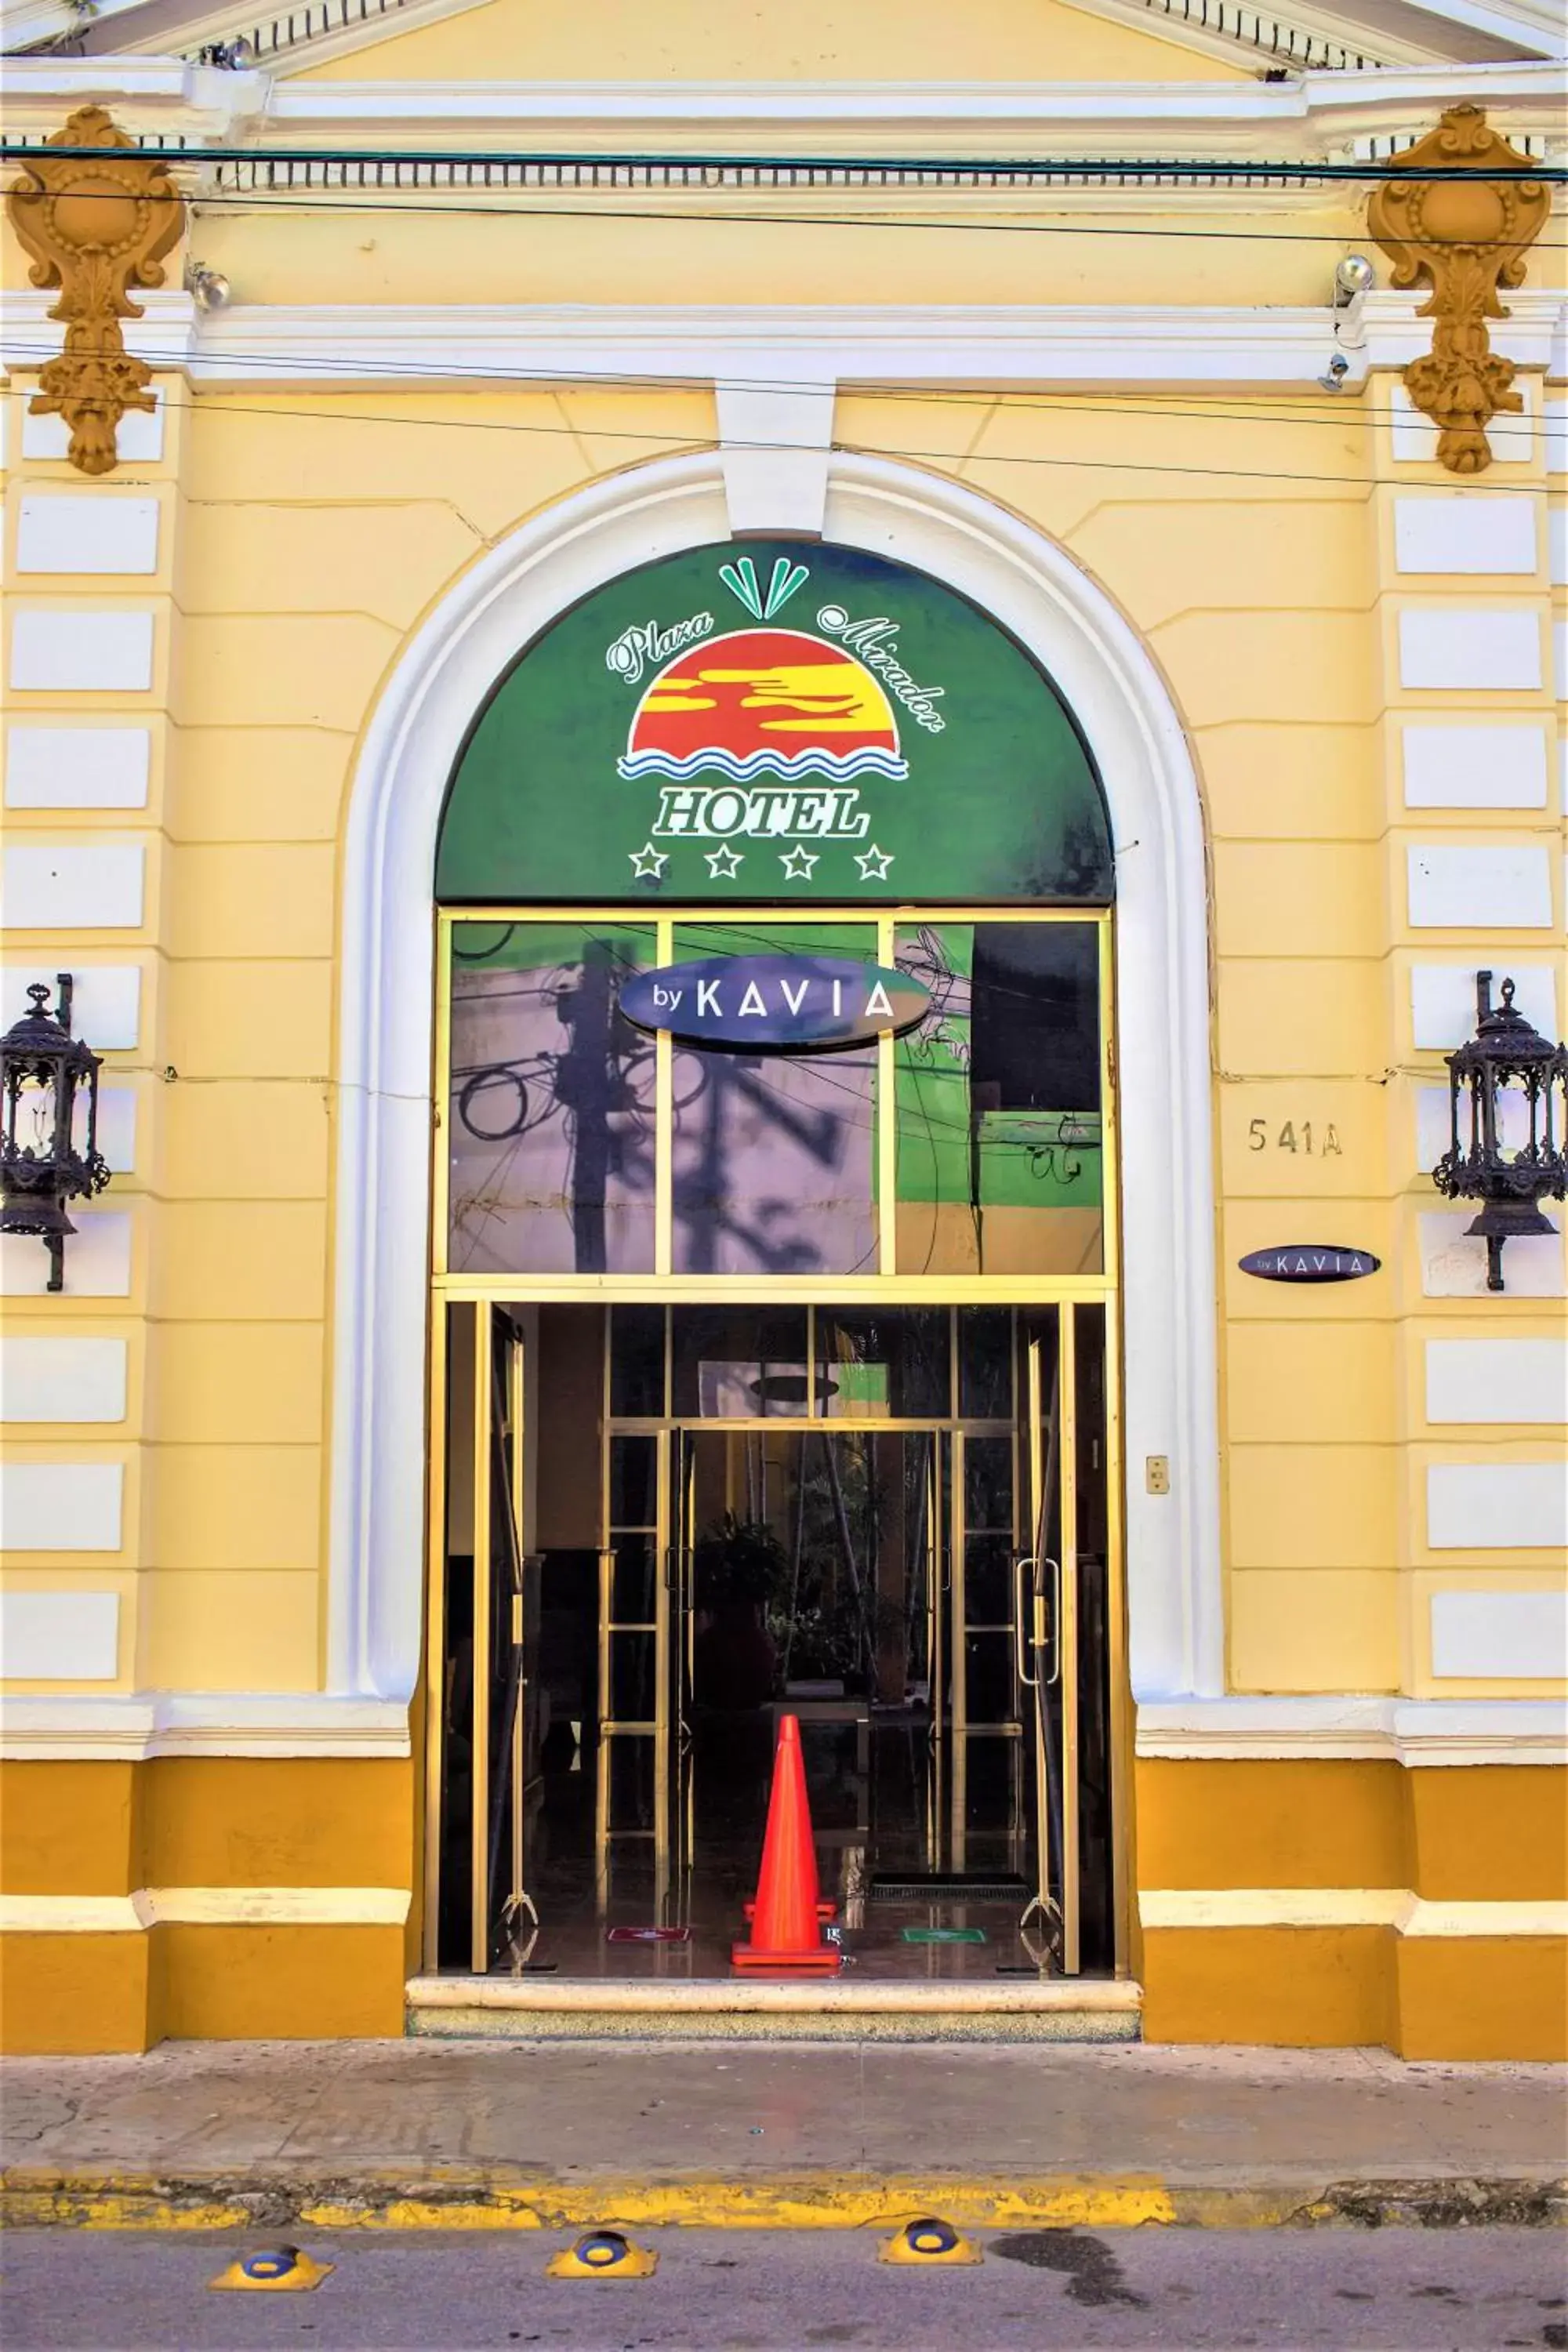 Facade/entrance in Hotel Plaza Mirador